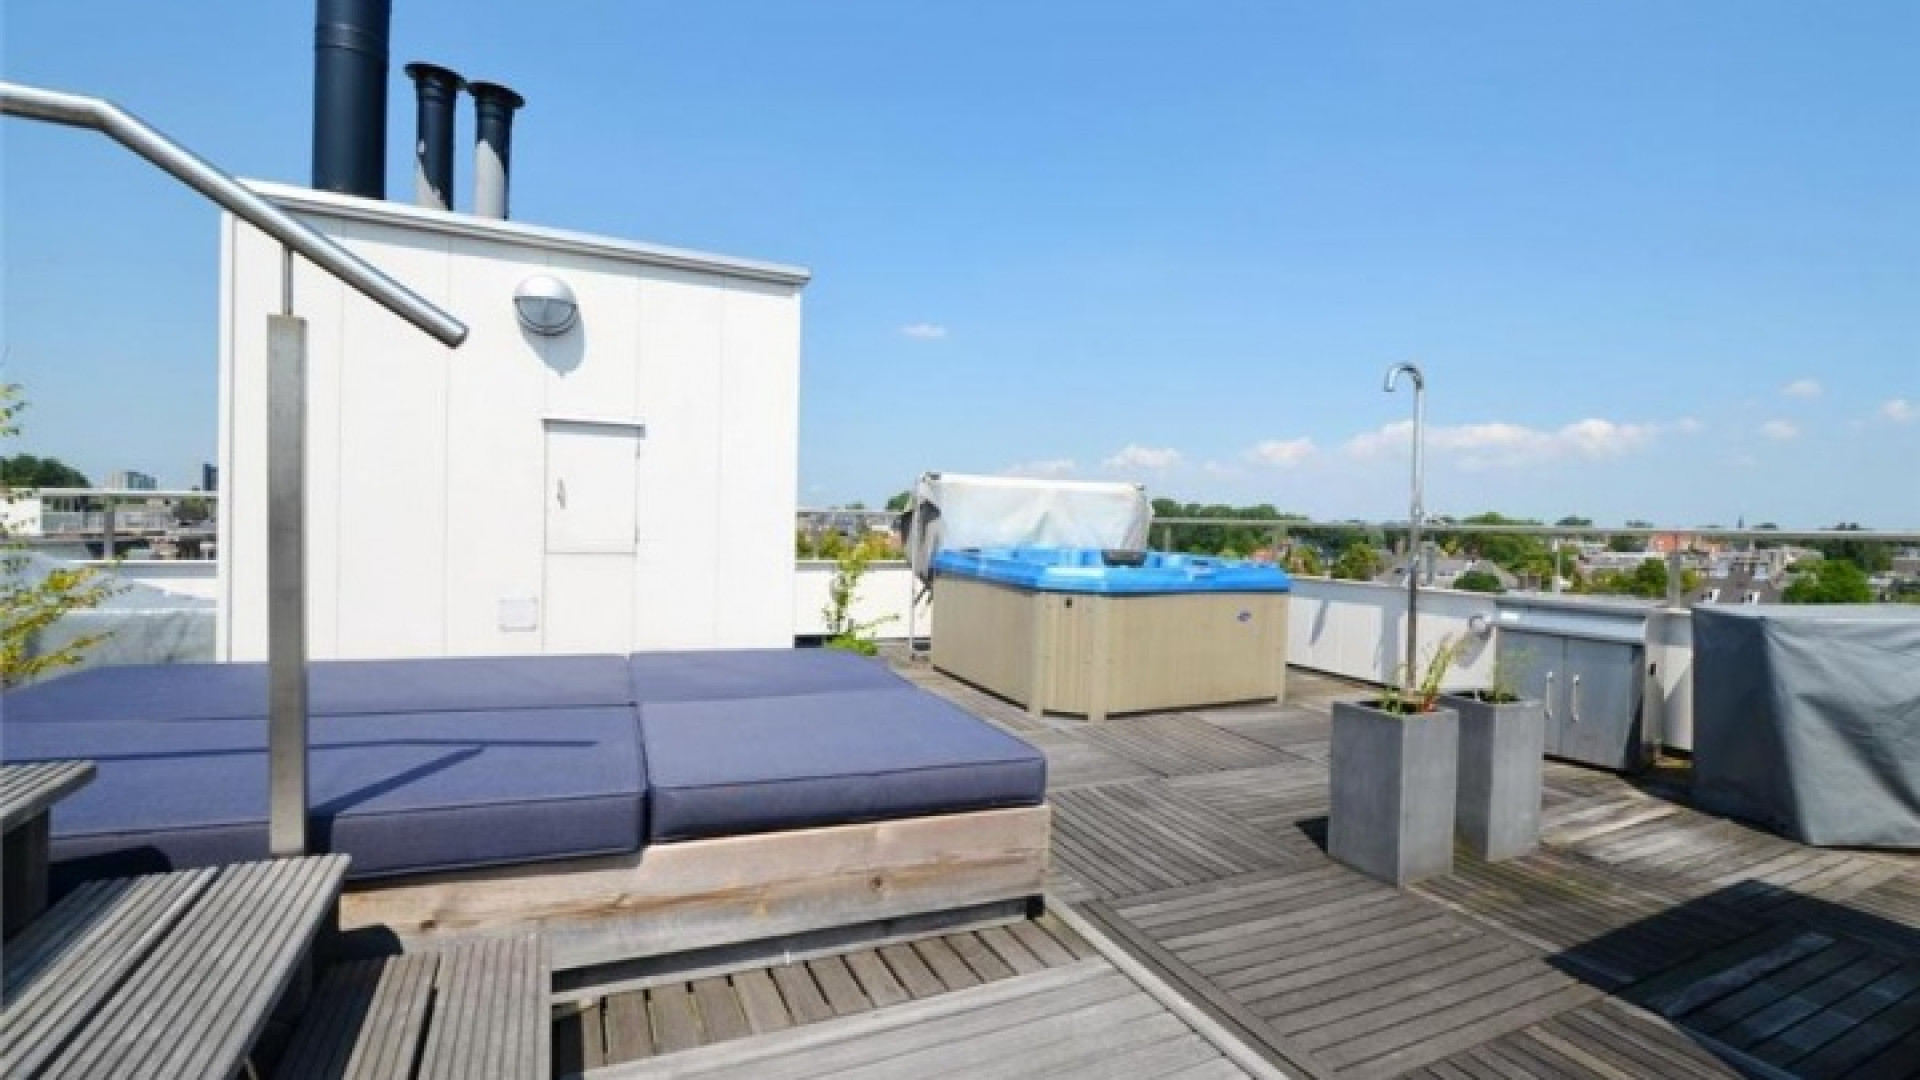 Frank Rijkaard vindt huurder voor dit zeer luxe appartement met jacuzzi op dakterras. Zie foto's 28